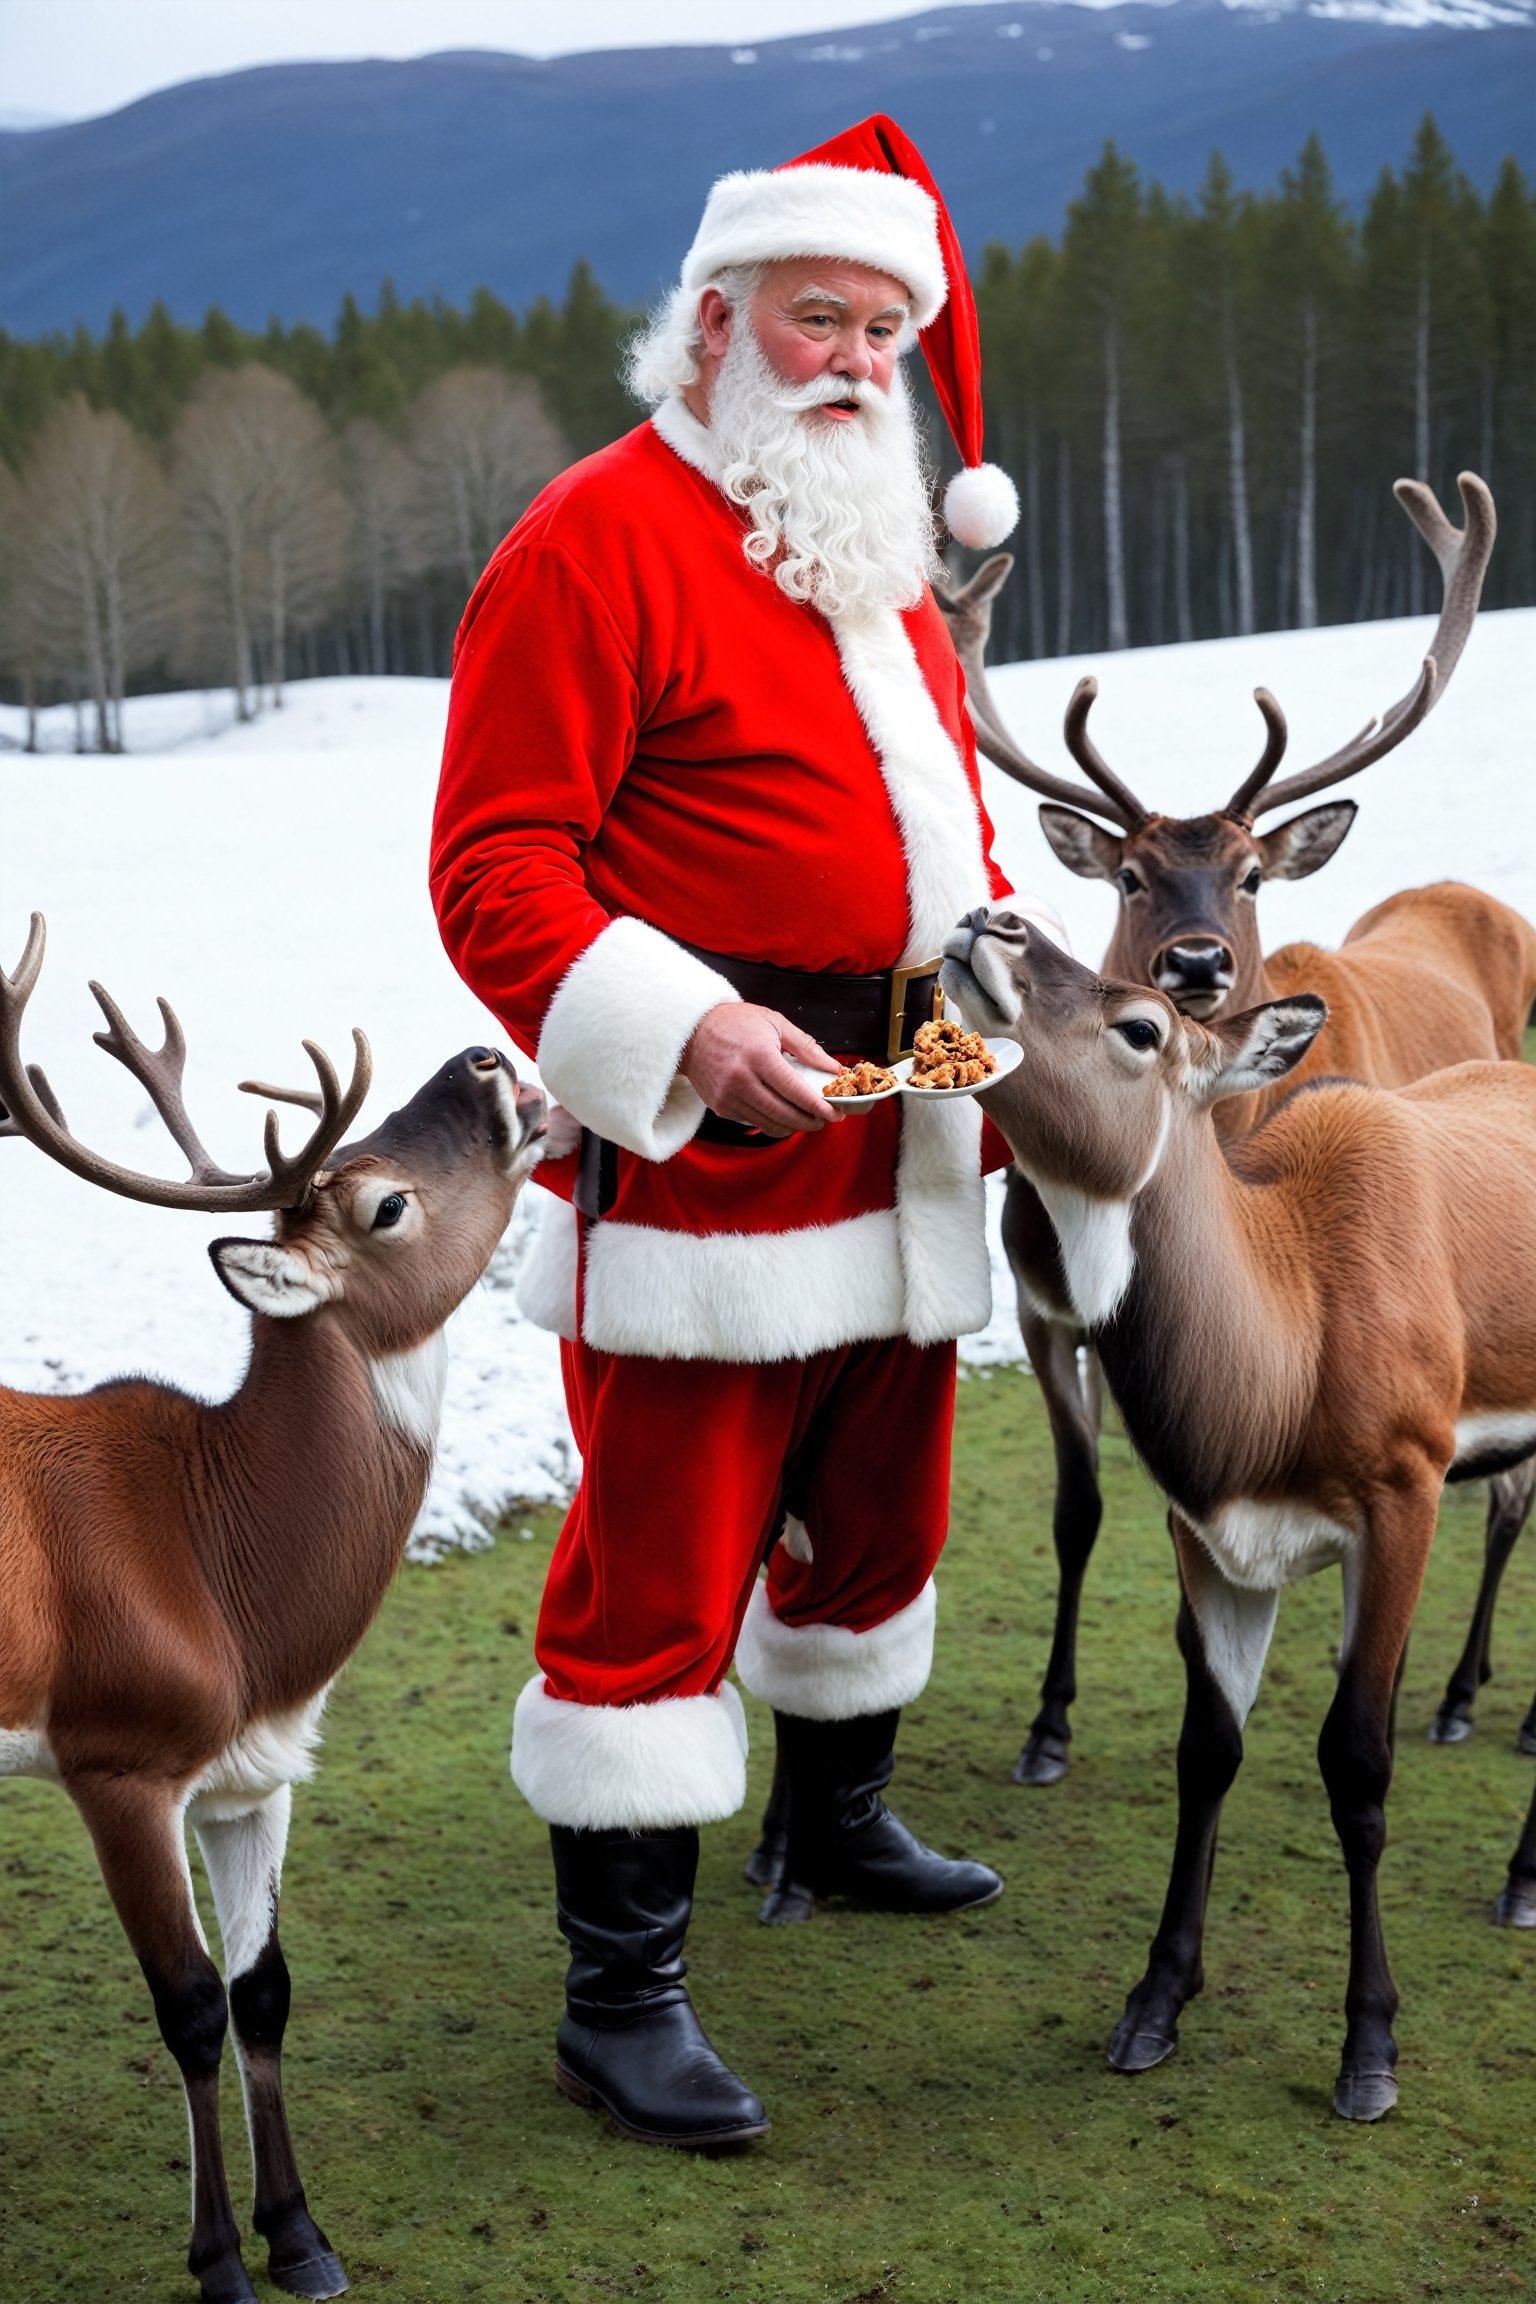 Santa Claus feeding reindeers